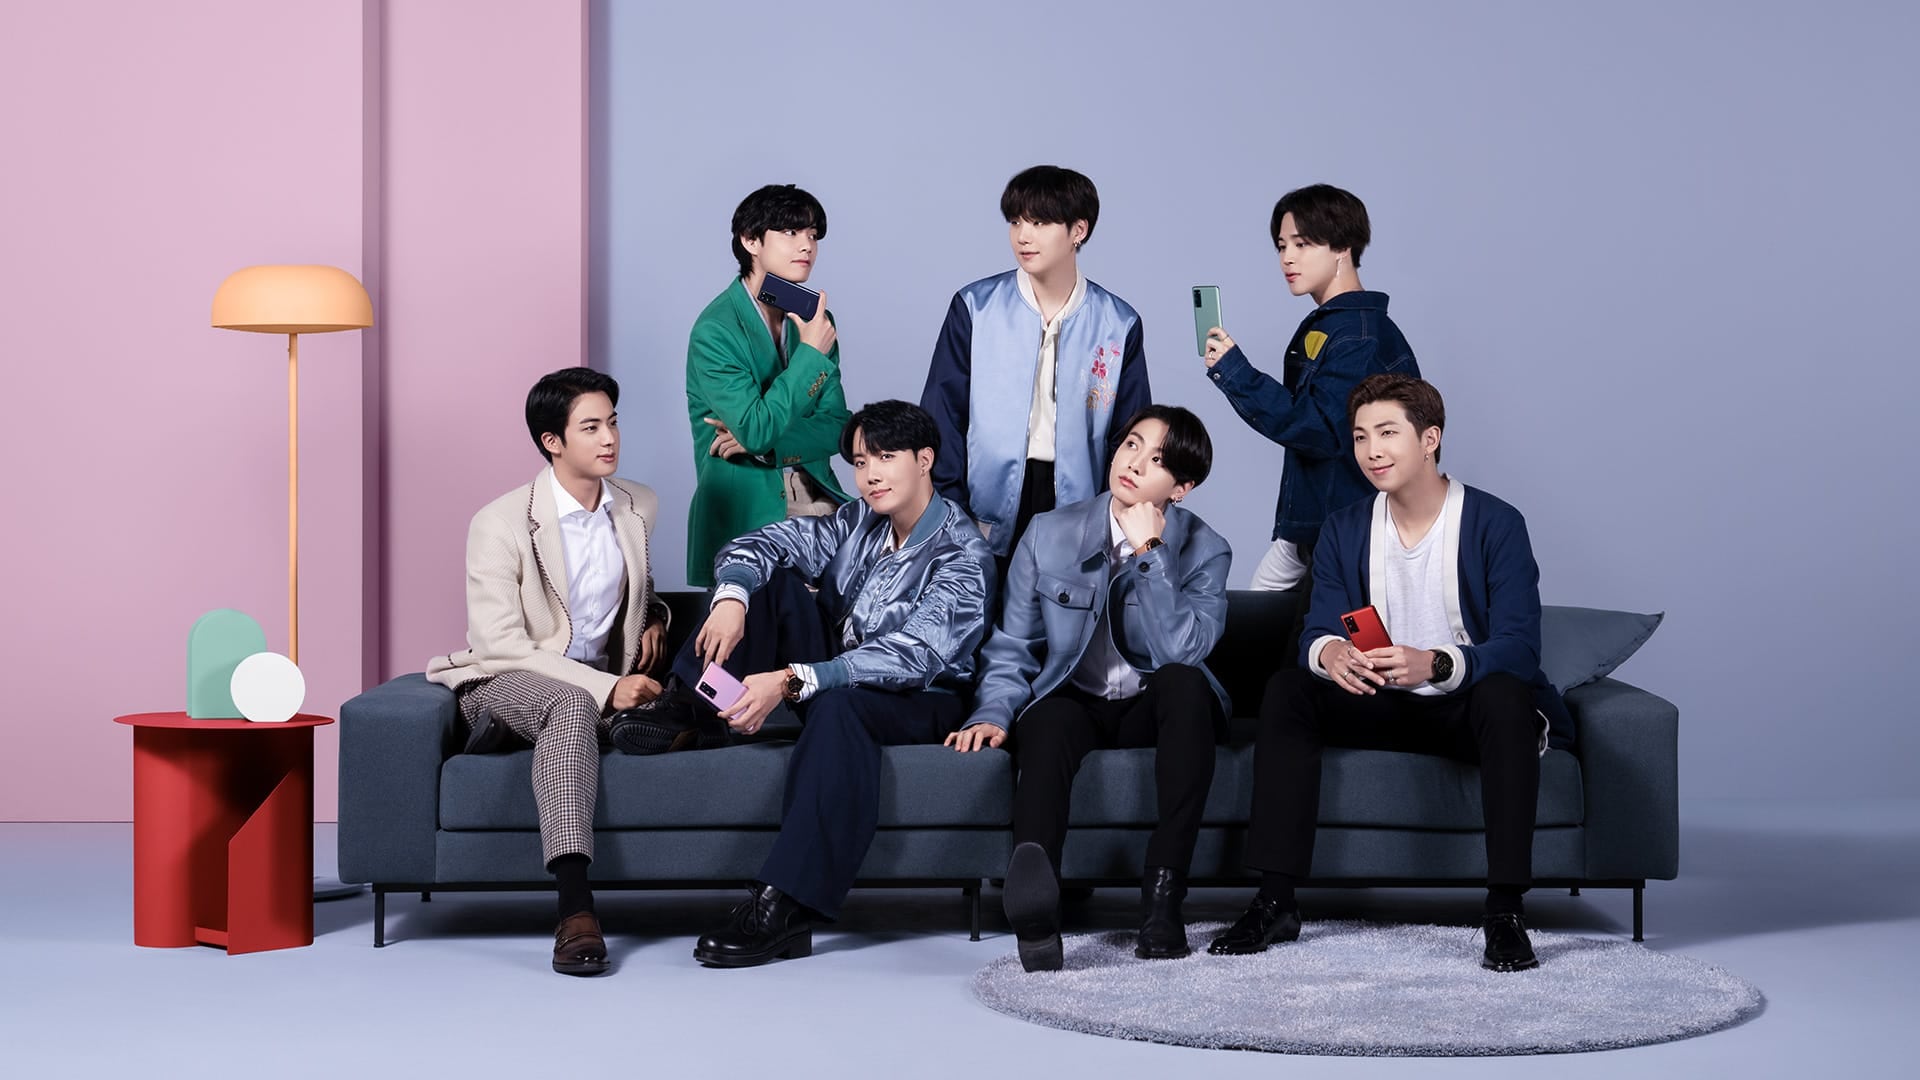 Четыре участника группы BTS сидят на диване, а три стоят за ним. Все они держат в руке телефоны Galaxy S20 FE разного цвета.